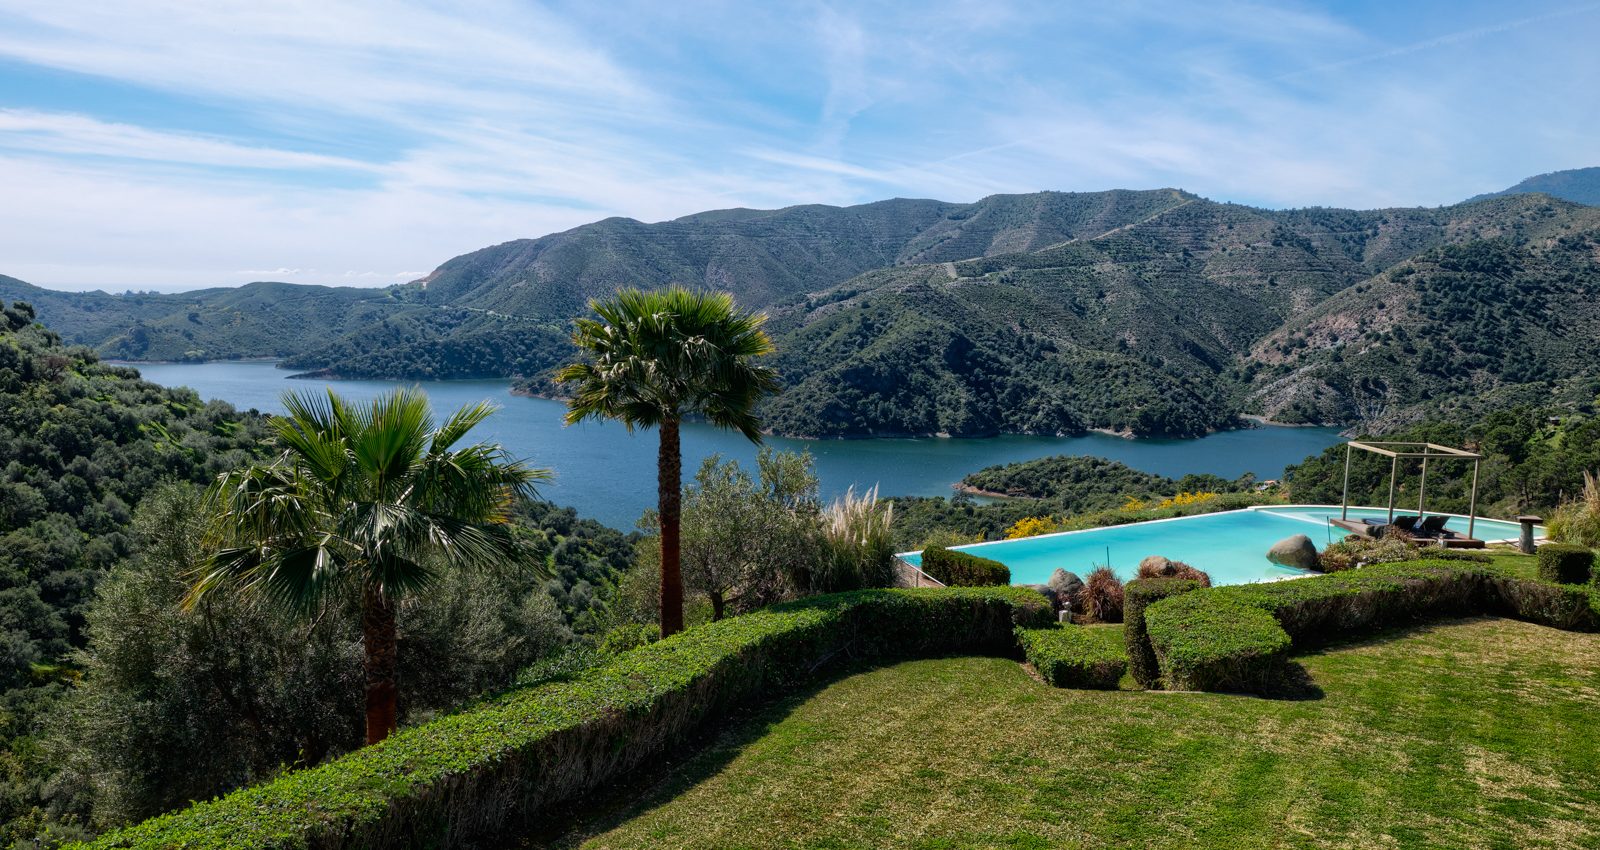 Zeitgenössische Qualitäts Villa mit spektakulärem Blick über das Mittelmeer